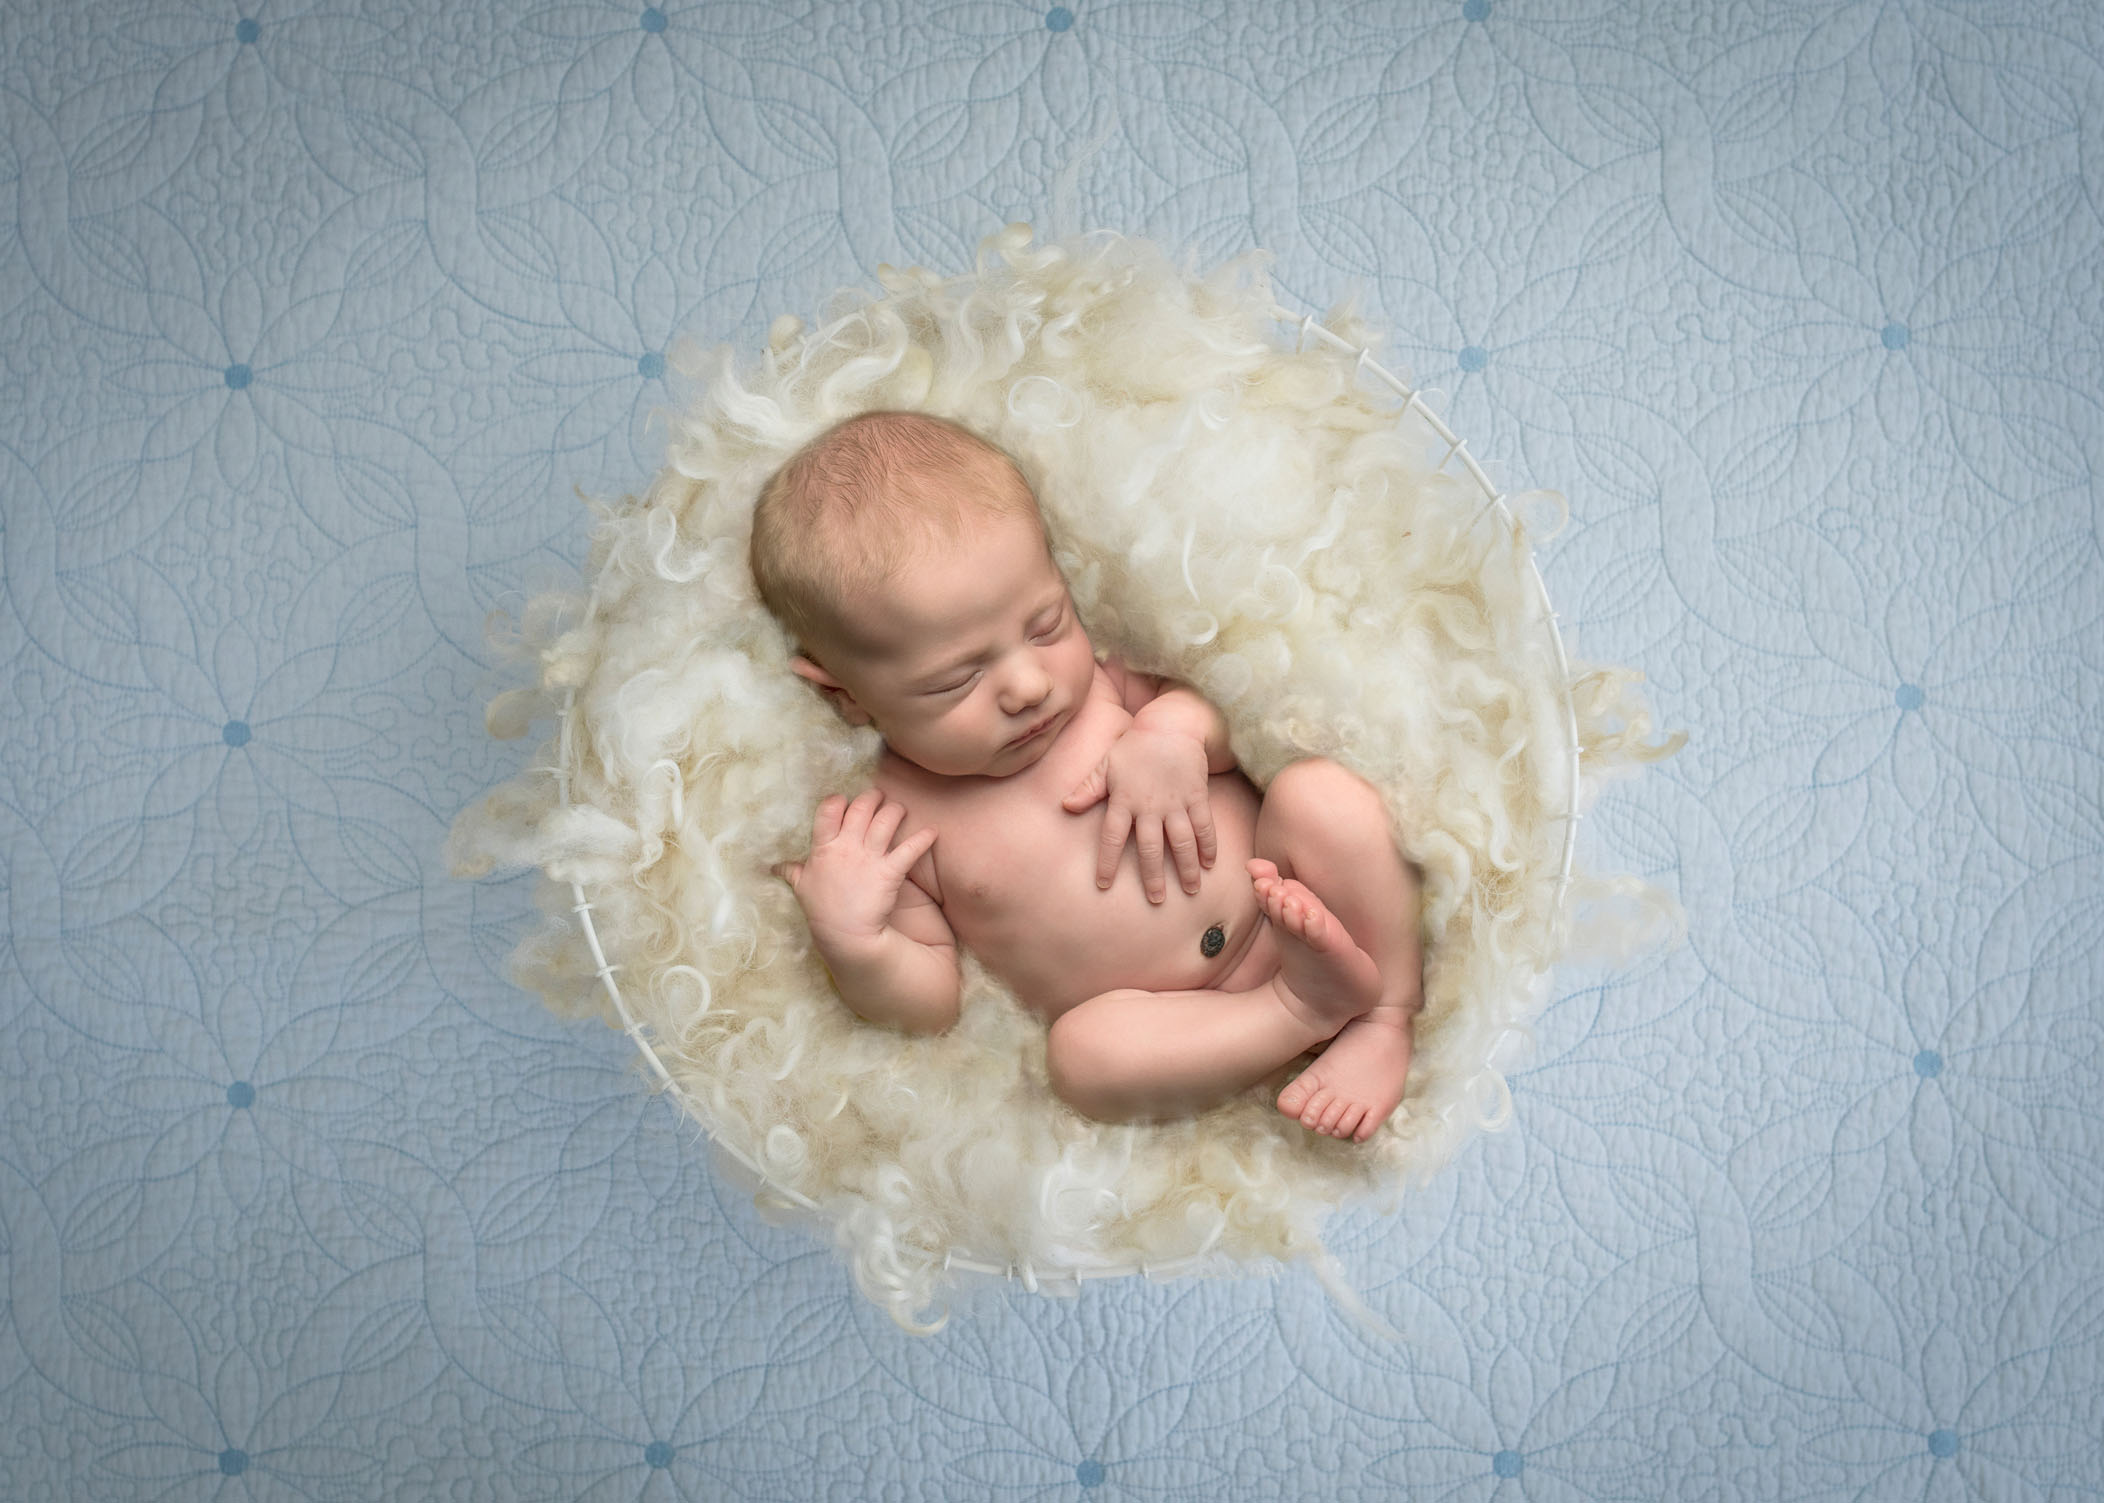 Newborn baby boy sleeping in cream fluff basket on blue background